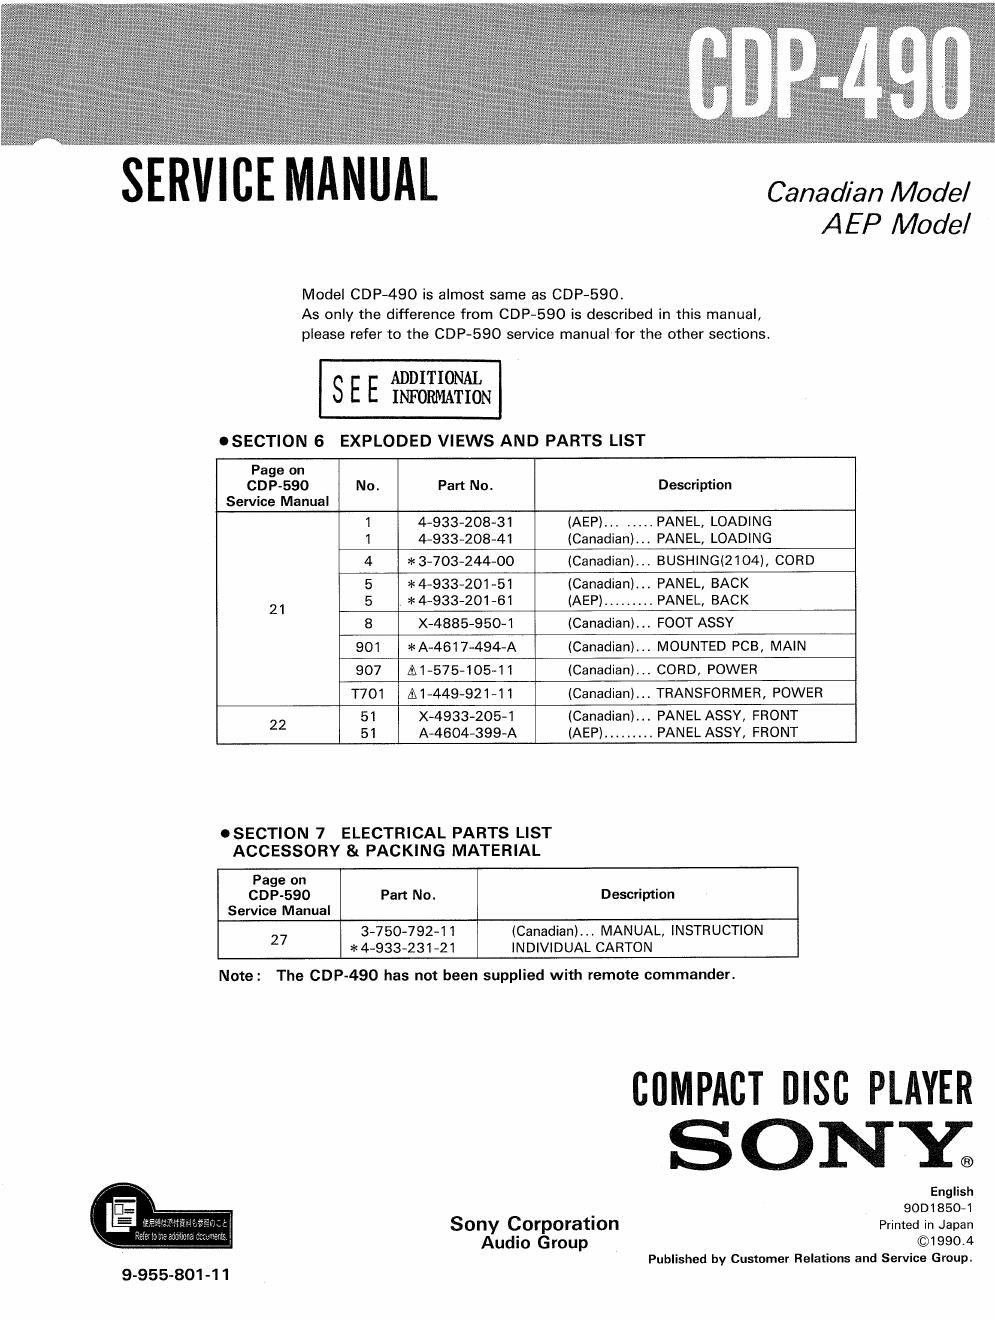 sony cdp 490 service manual